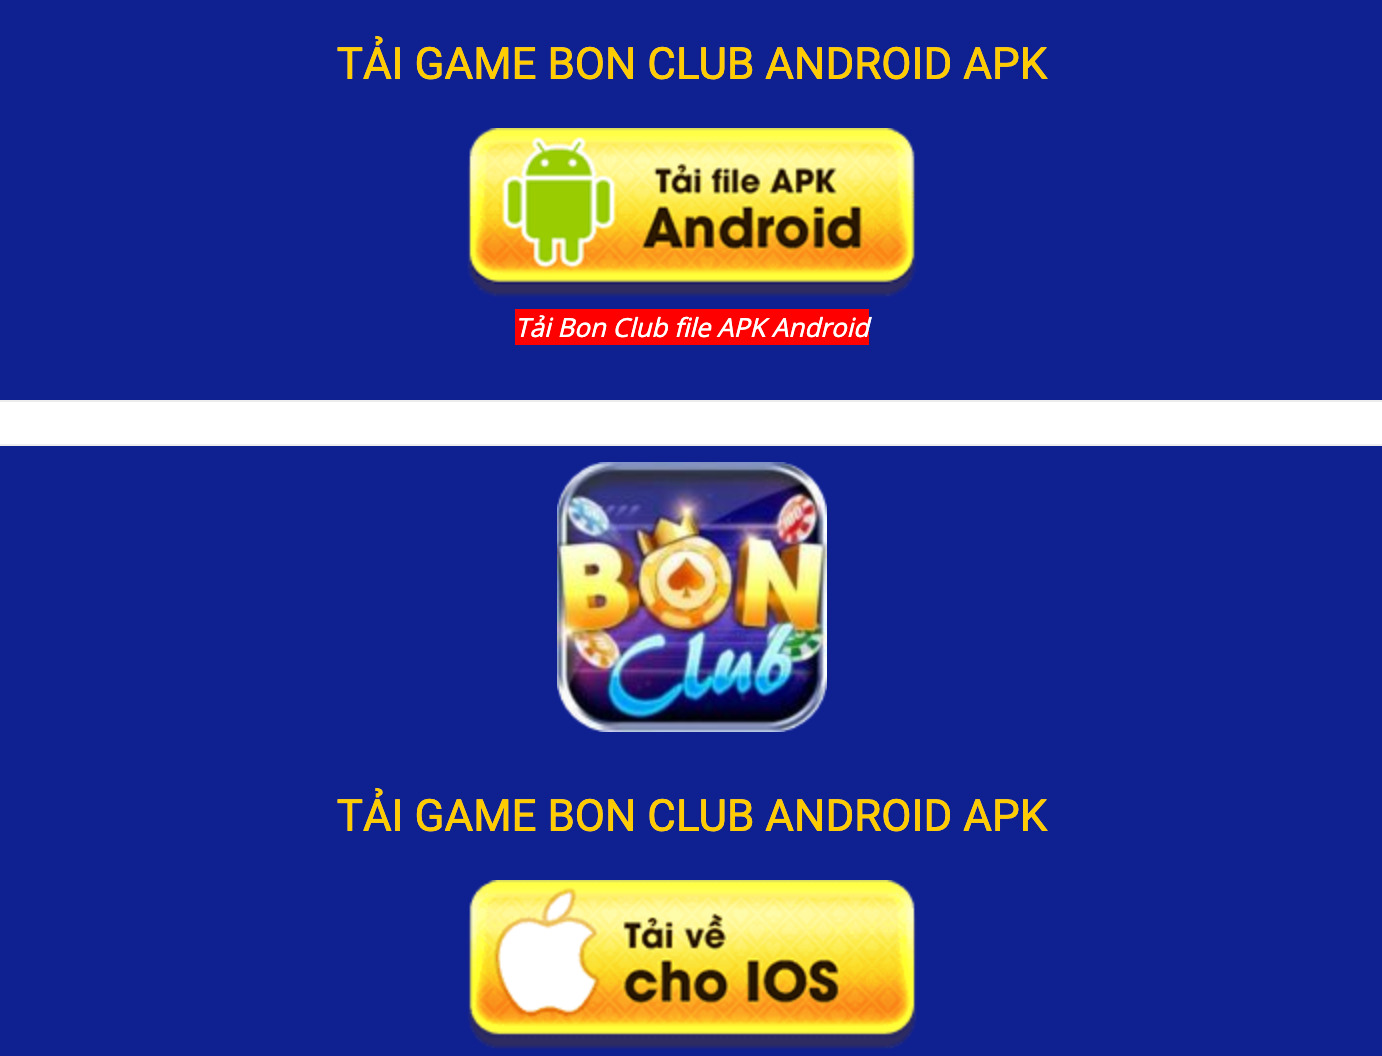 Người chơi có thể tải app dễ dàng trên điện thoại hai hệ điều hành là Android và iOS